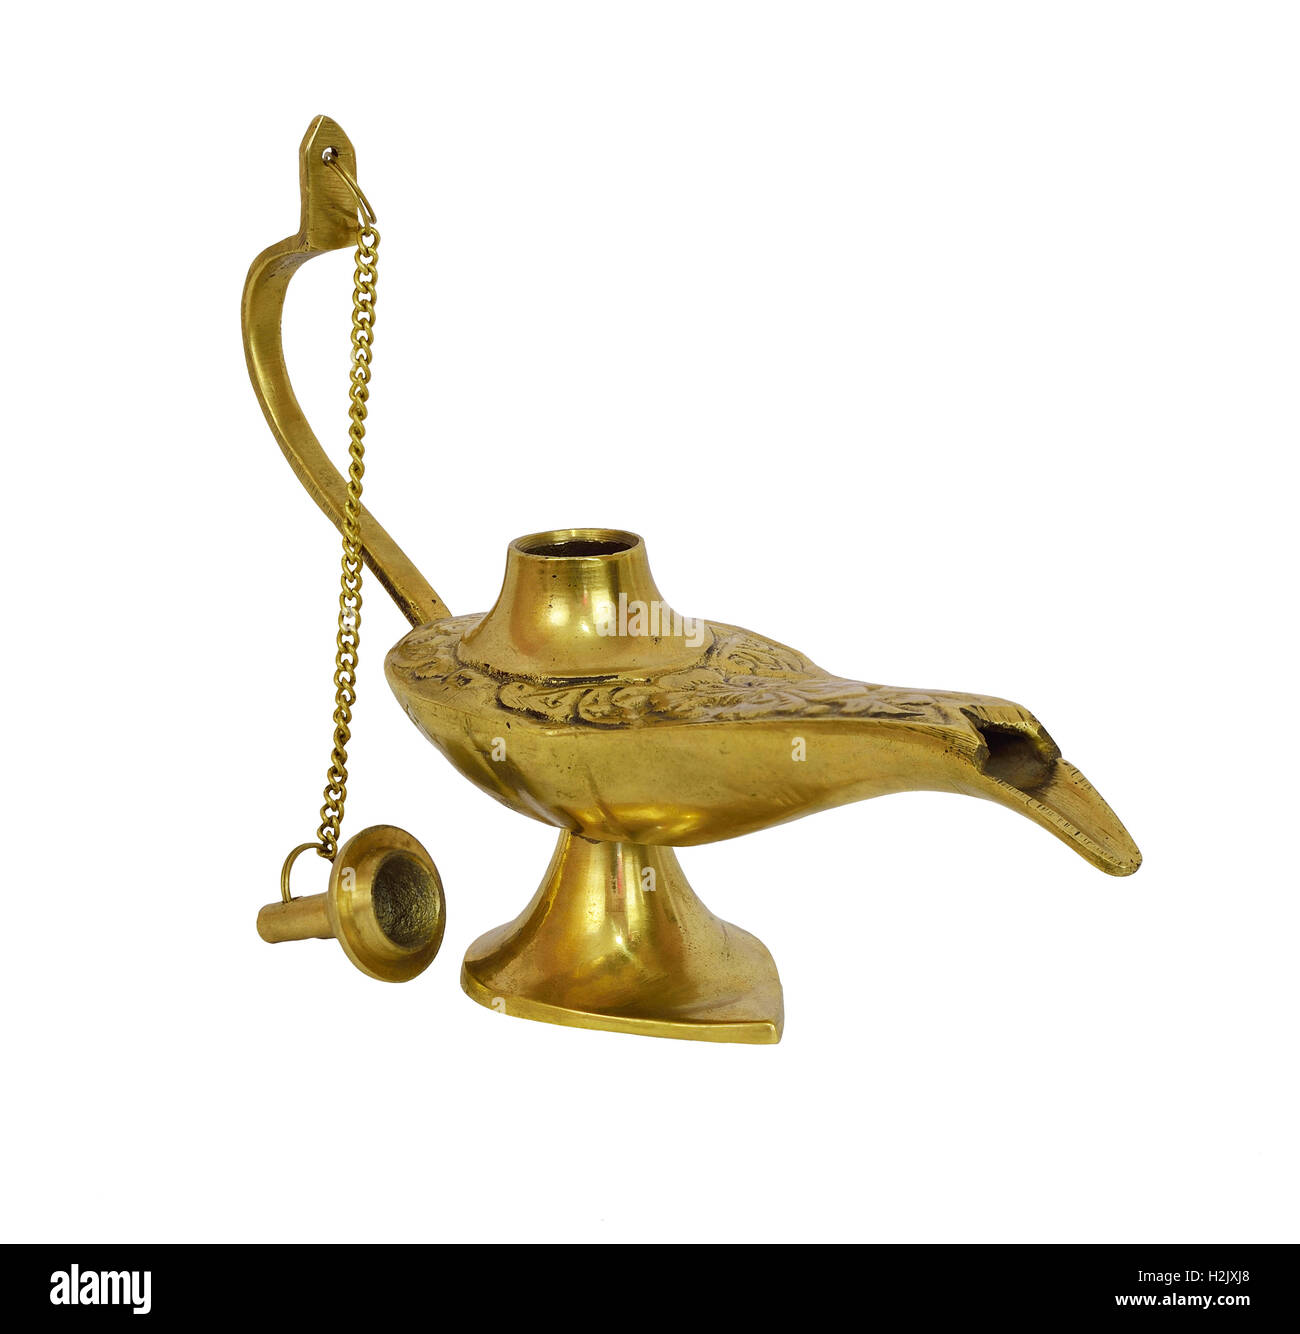 Gold genie lamp Stock Photo - Alamy